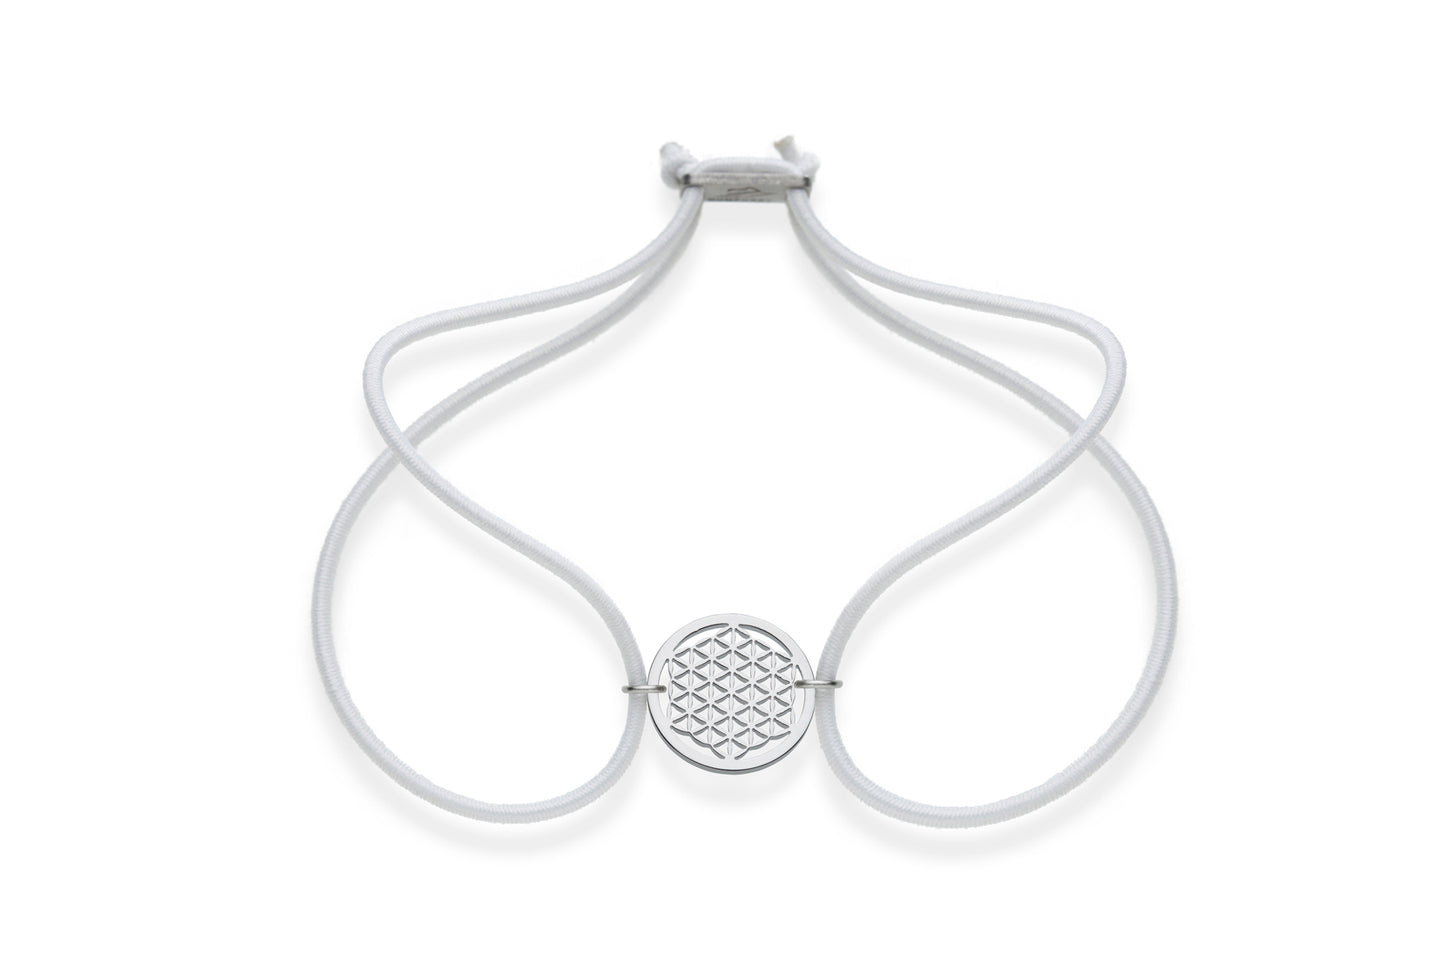 FORTUNA Armband - Blume des Lebens, Edelstahl, mit elastischem Textilband zum problemlosen an- und ausziehen